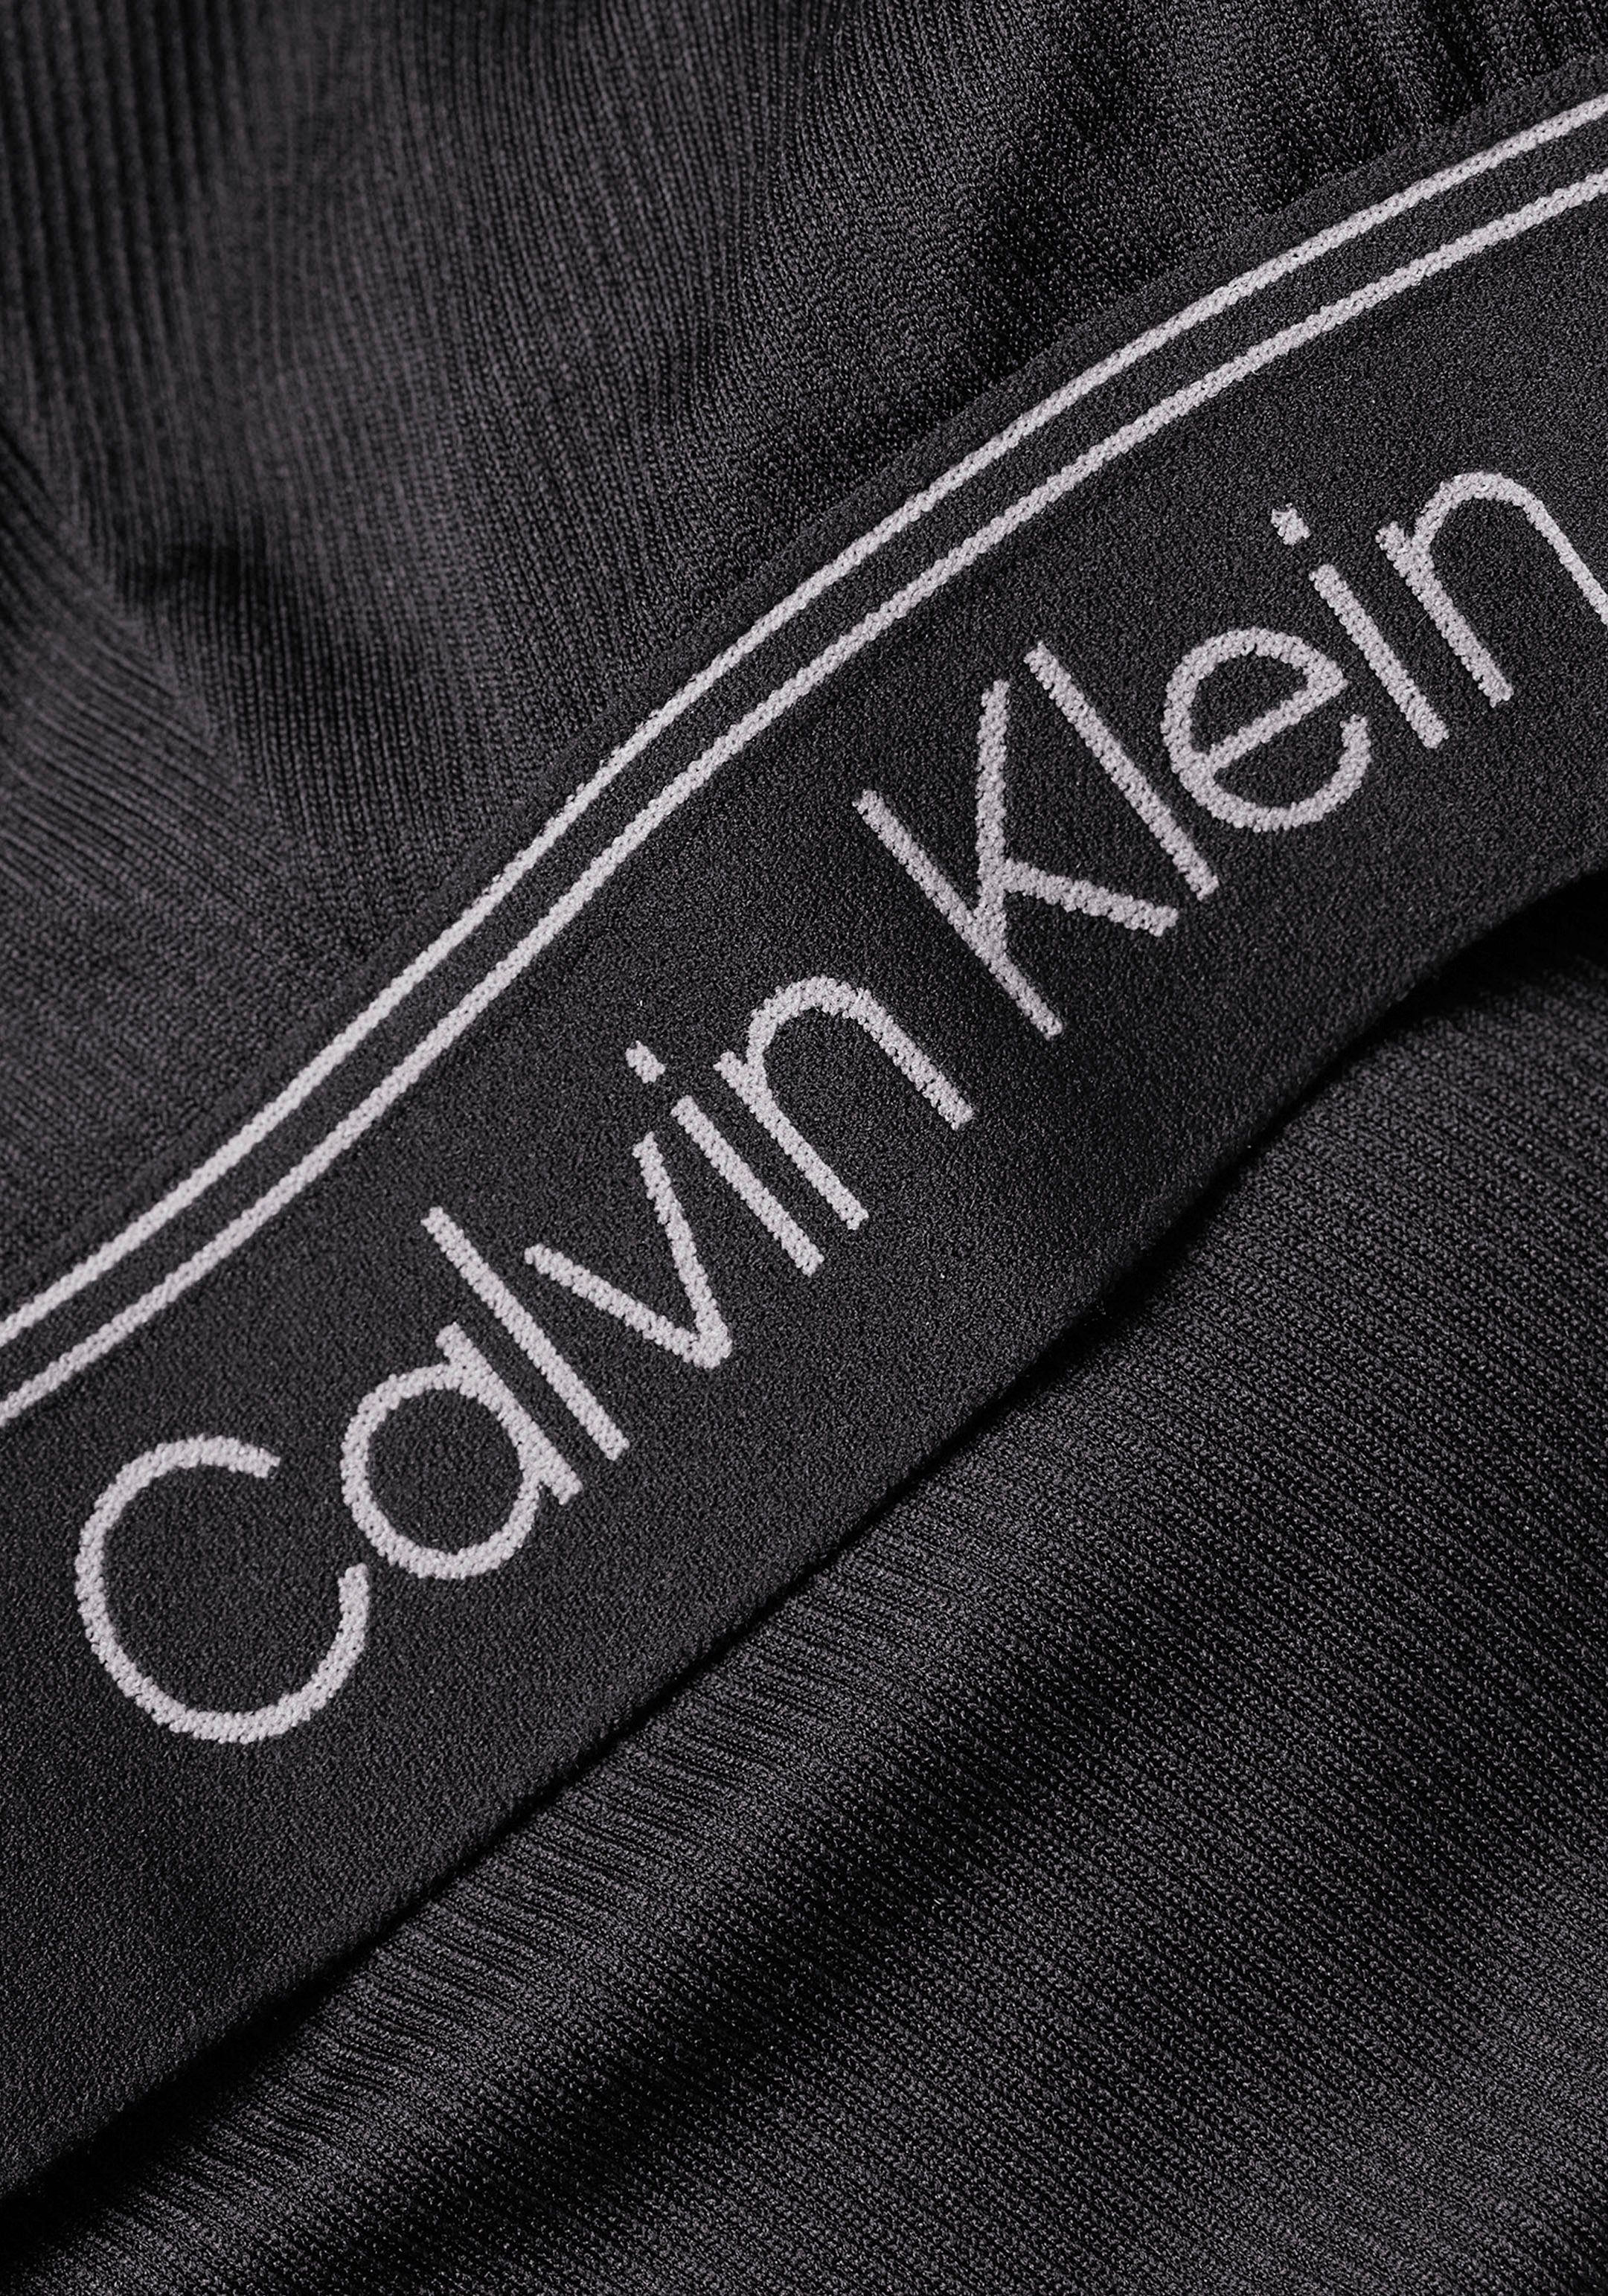 Calvin Klein Sport Sport-Bustier schwarz